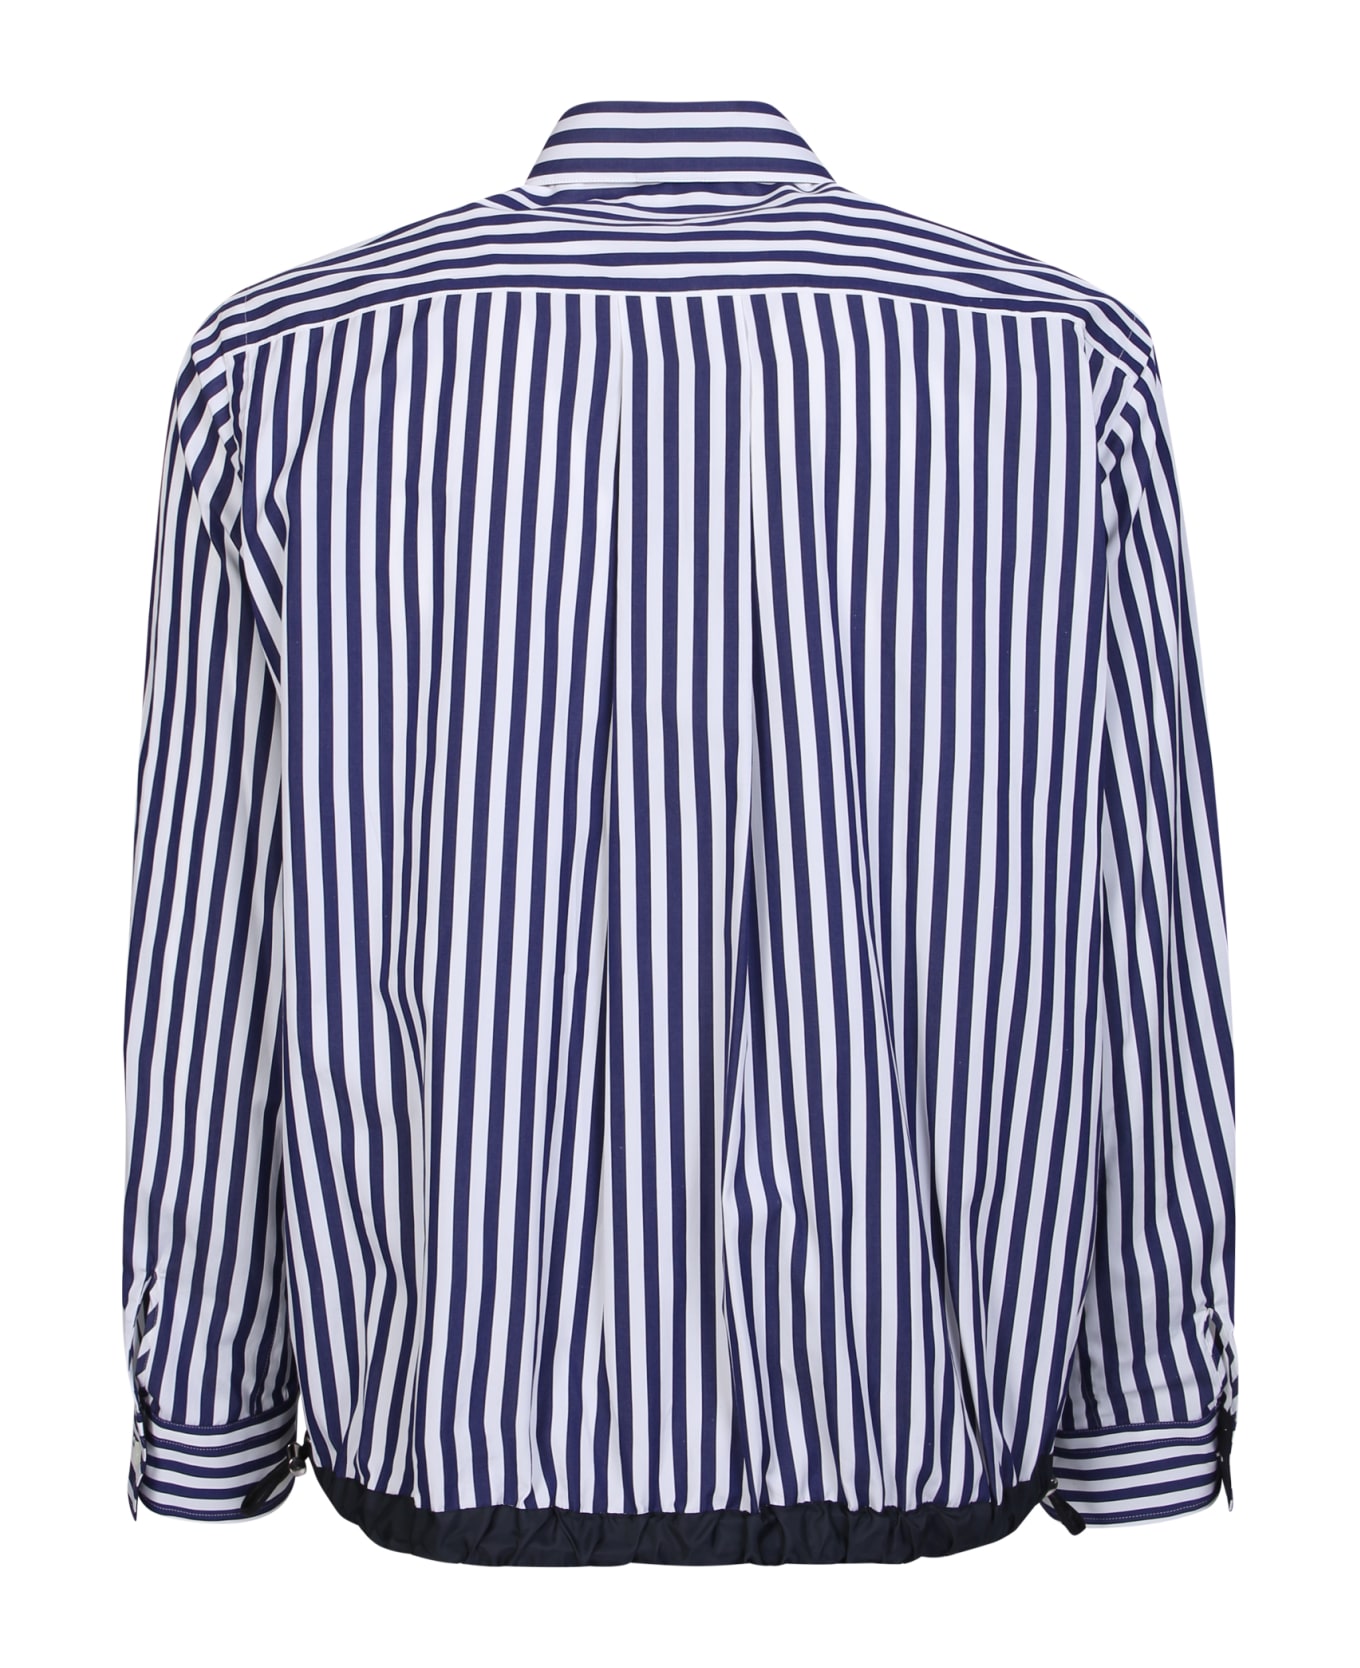 Sacai Striped Shirt With Drawstring Waist Details - Blue